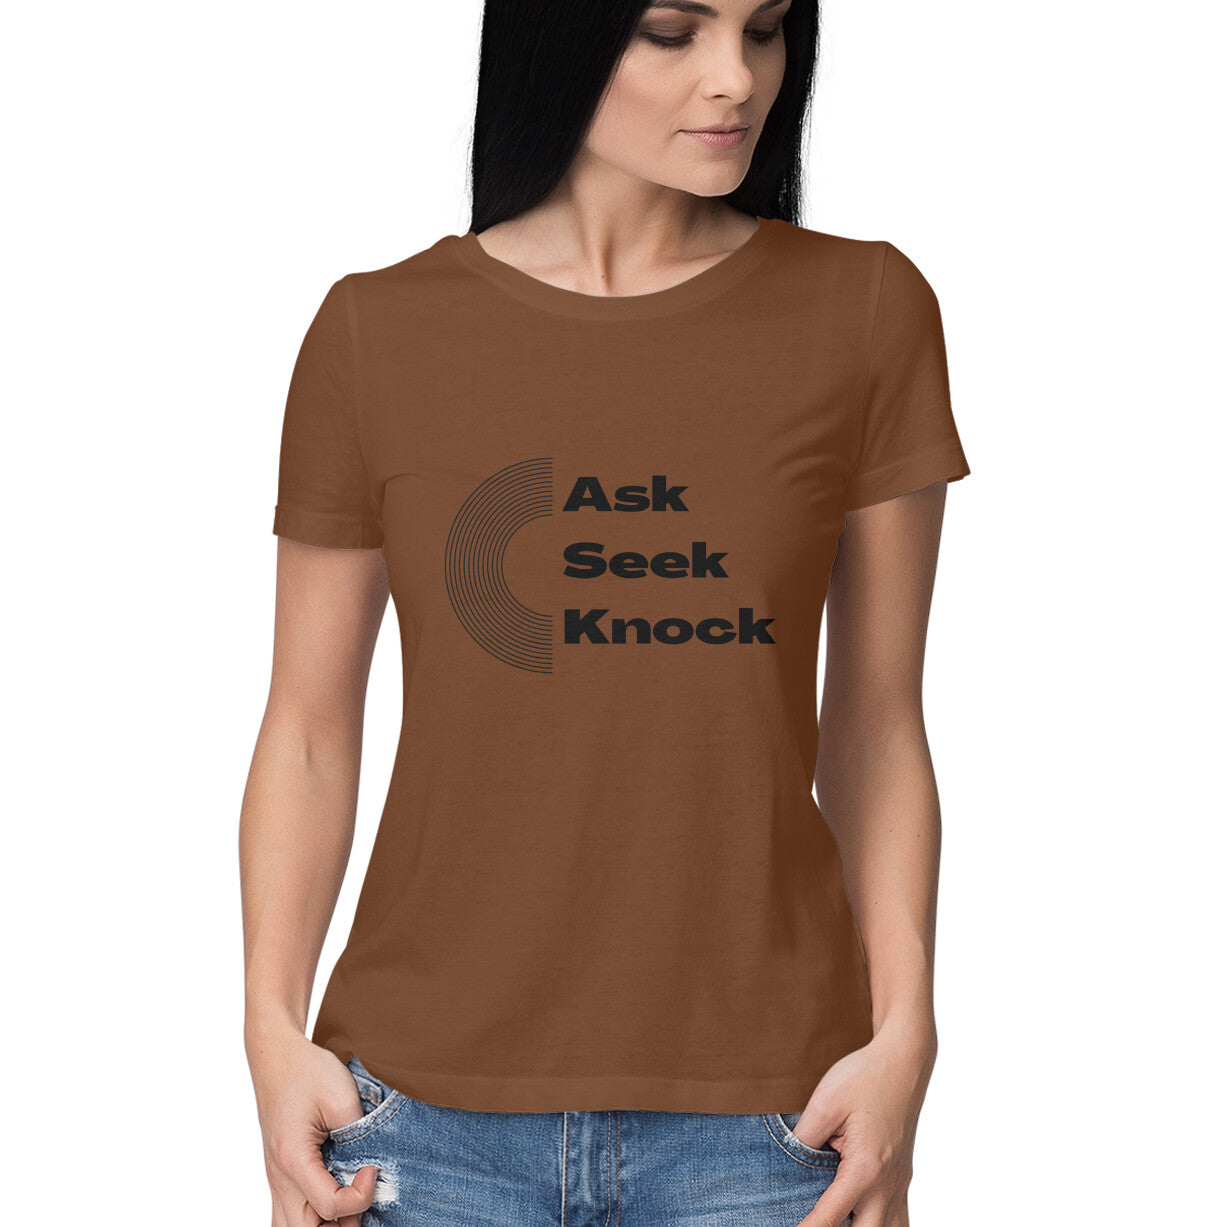 Ask, Seek, Knock women's tee